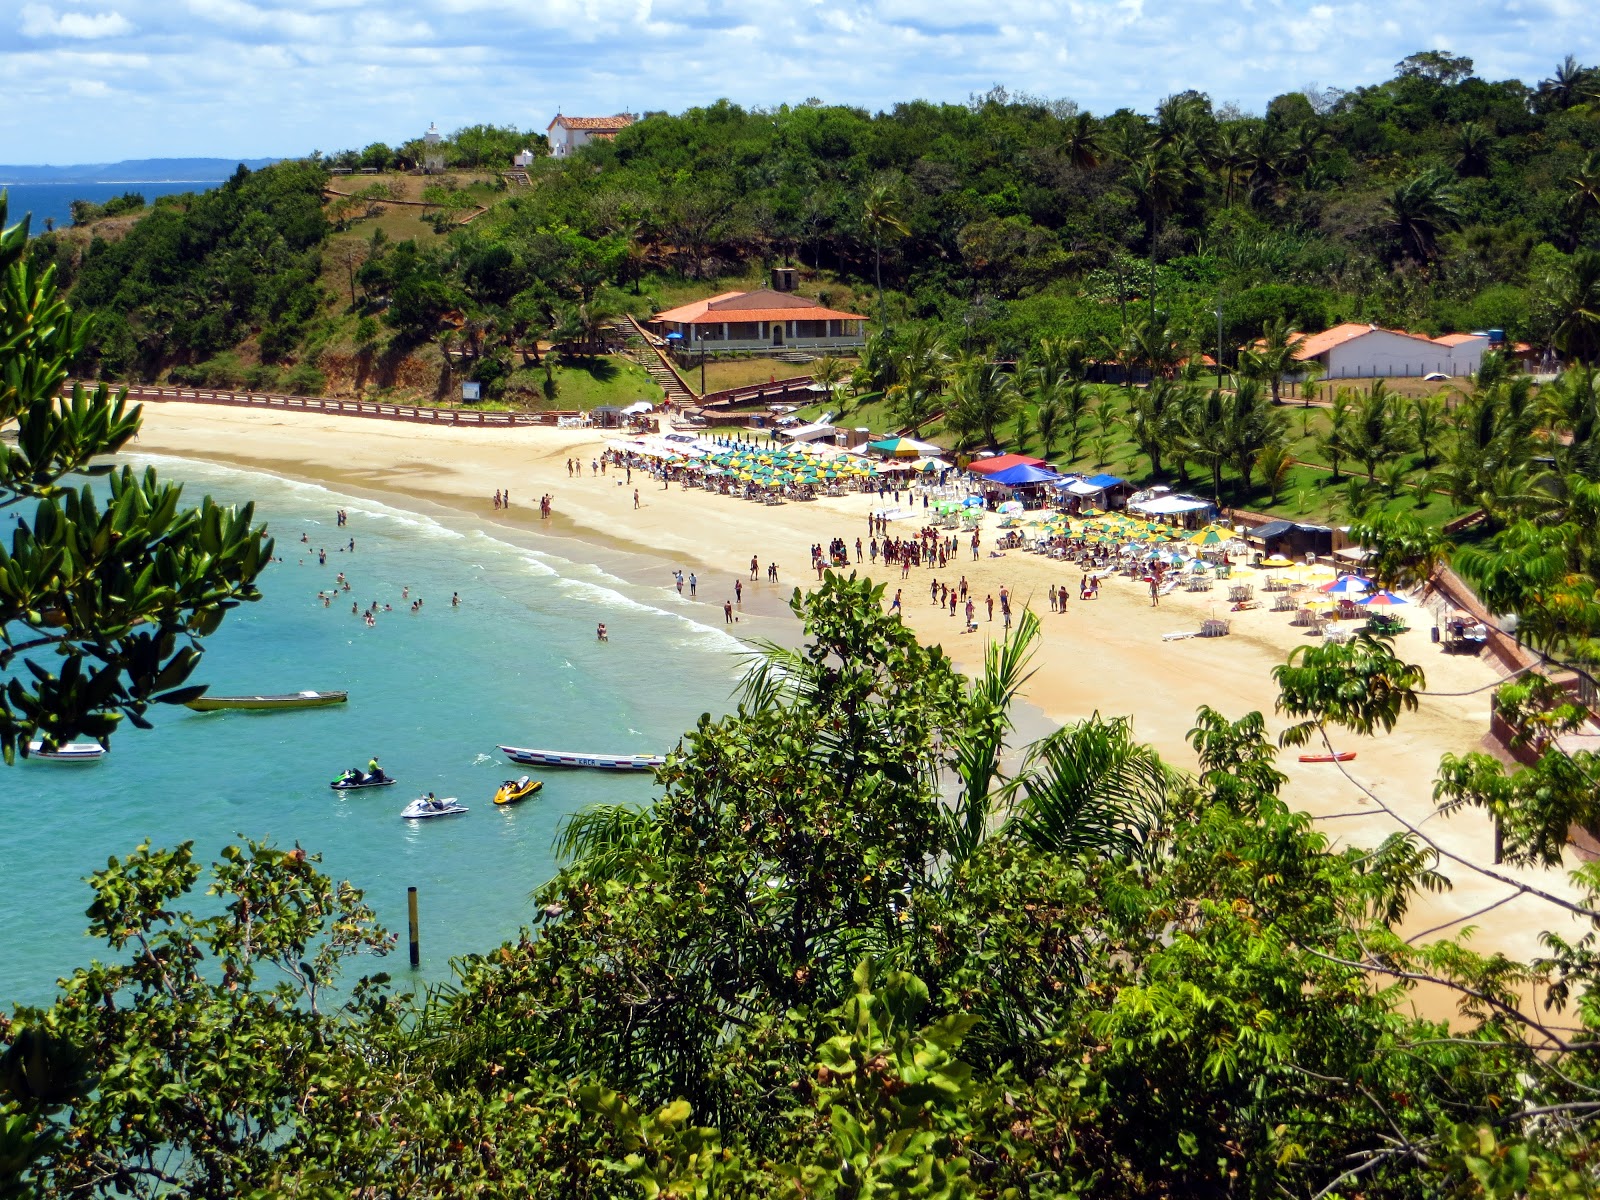 Foto af Praia de Nossa - populært sted blandt afslapningskendere